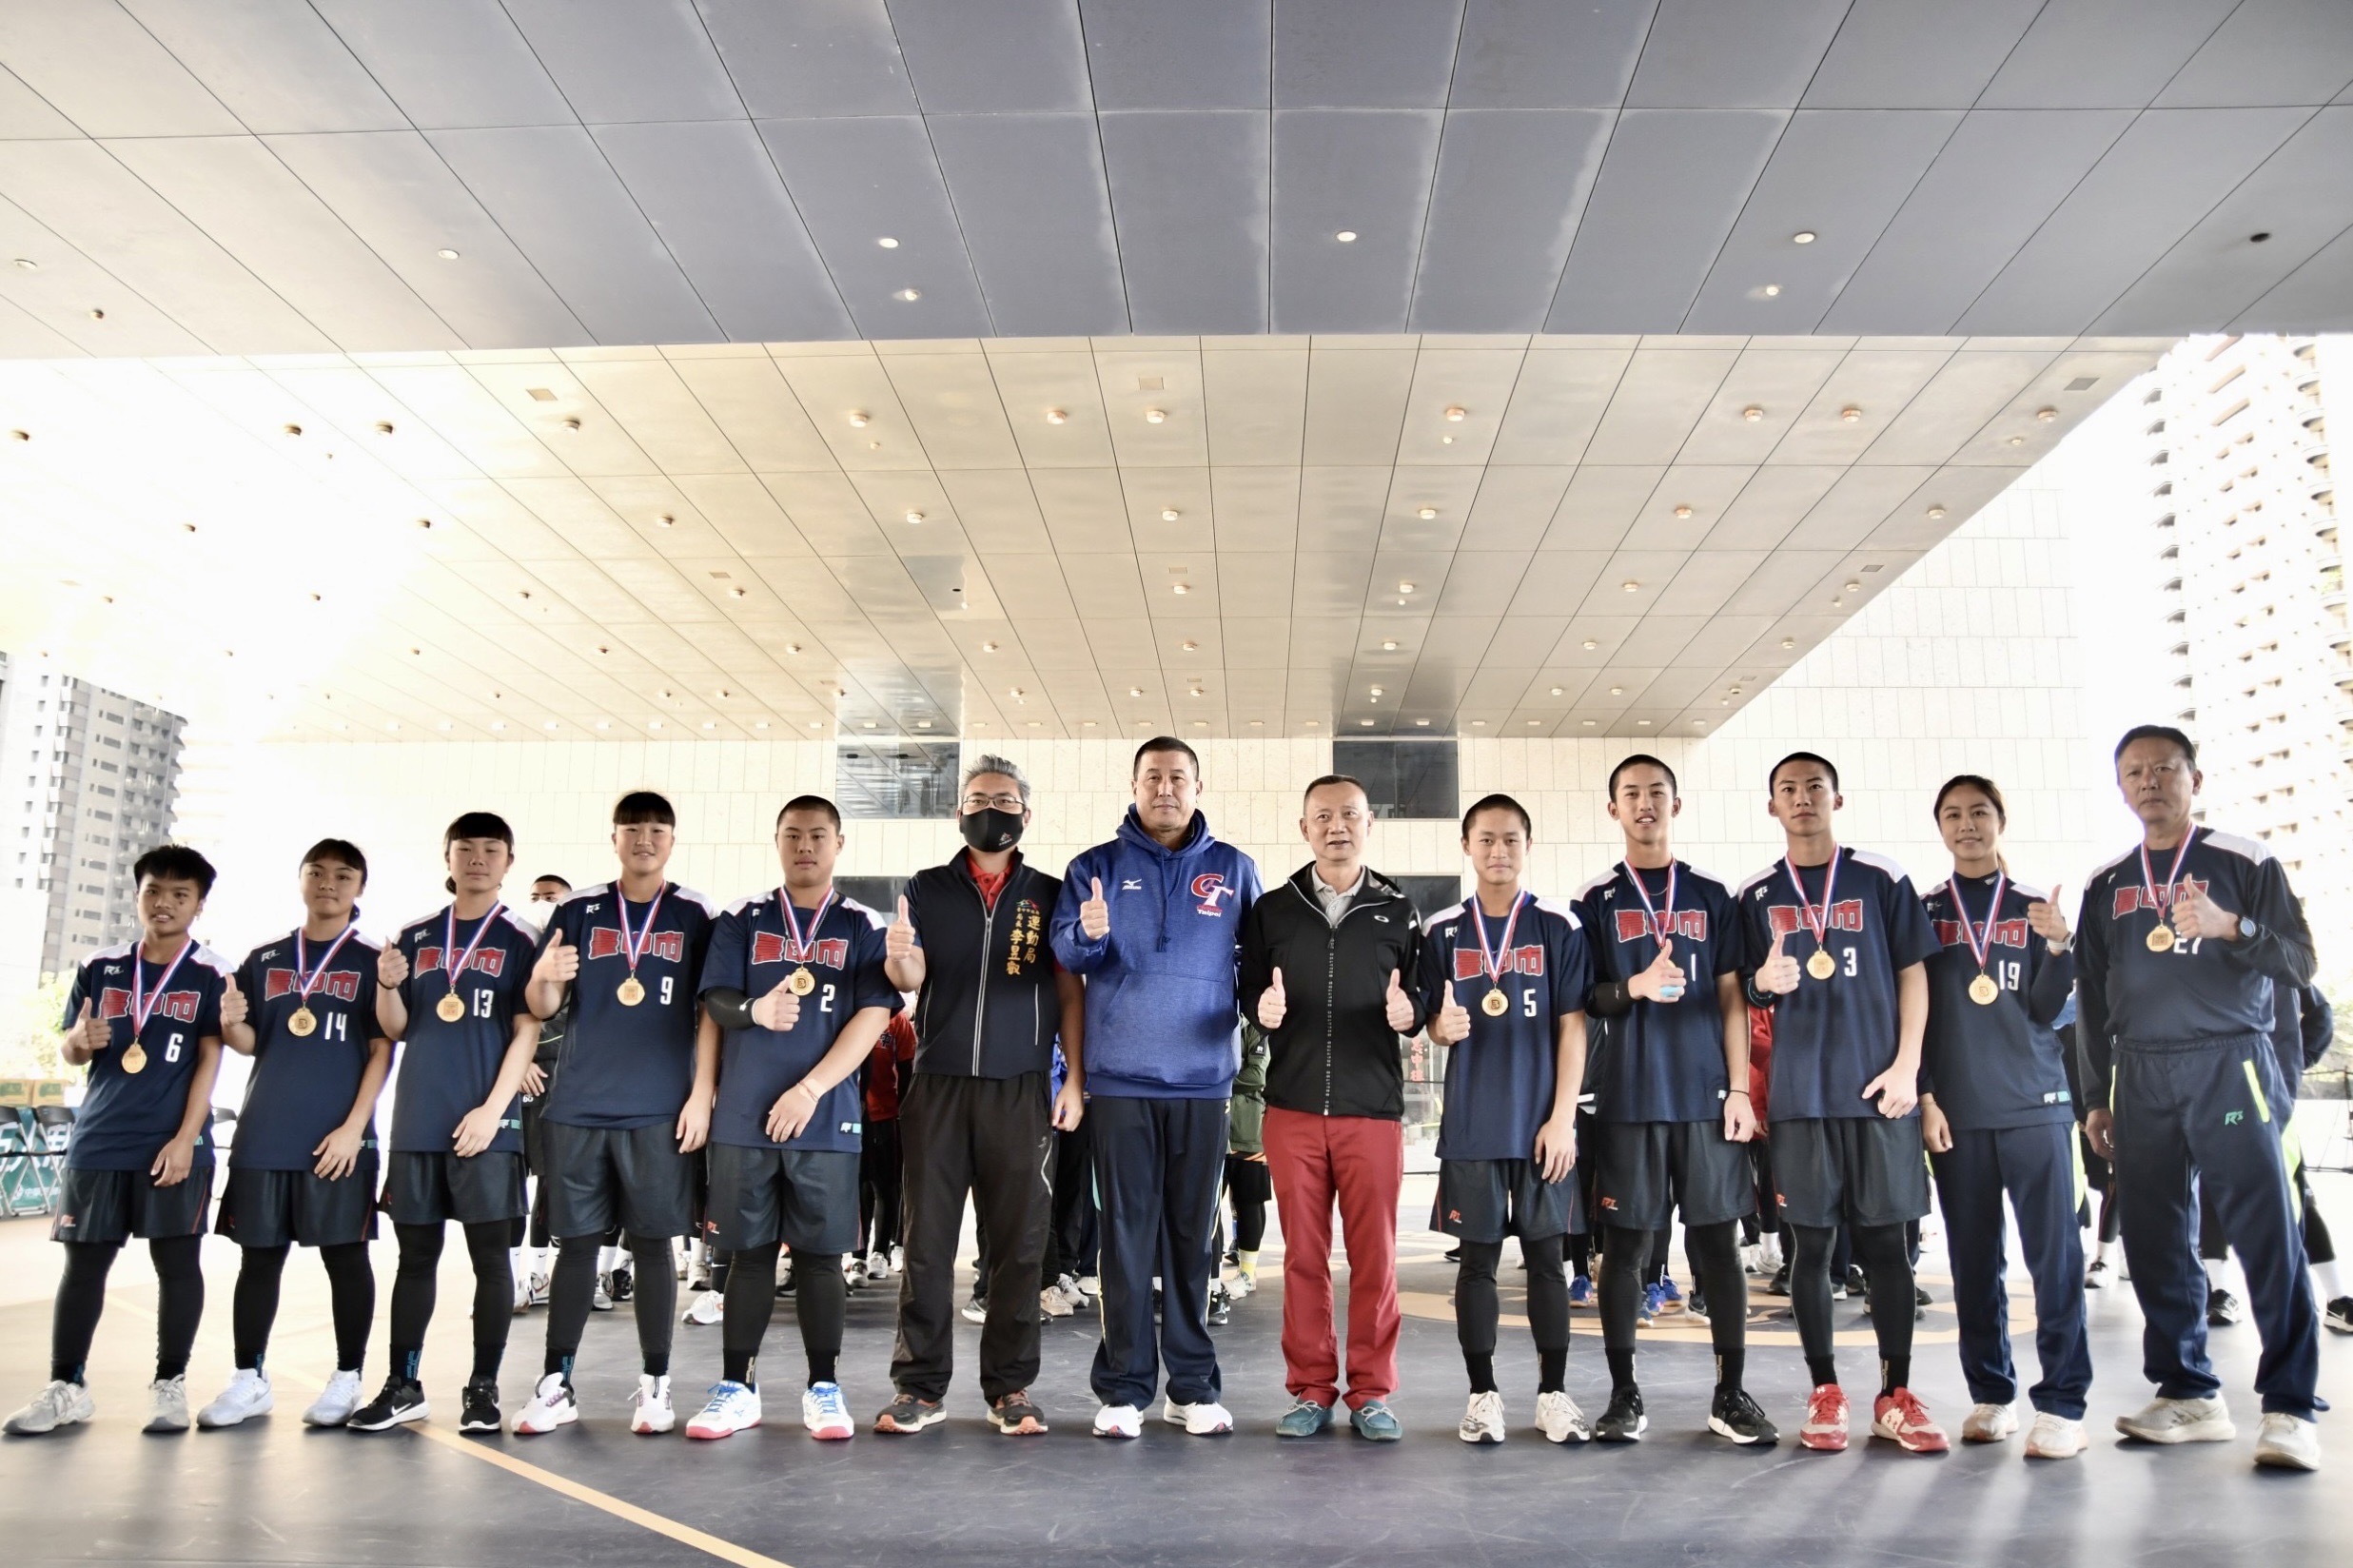 臺中隊榮獲全國第一 將代表國家出征奪首屆u18亞洲盃五人制棒球錦標賽。台中市運動局提供